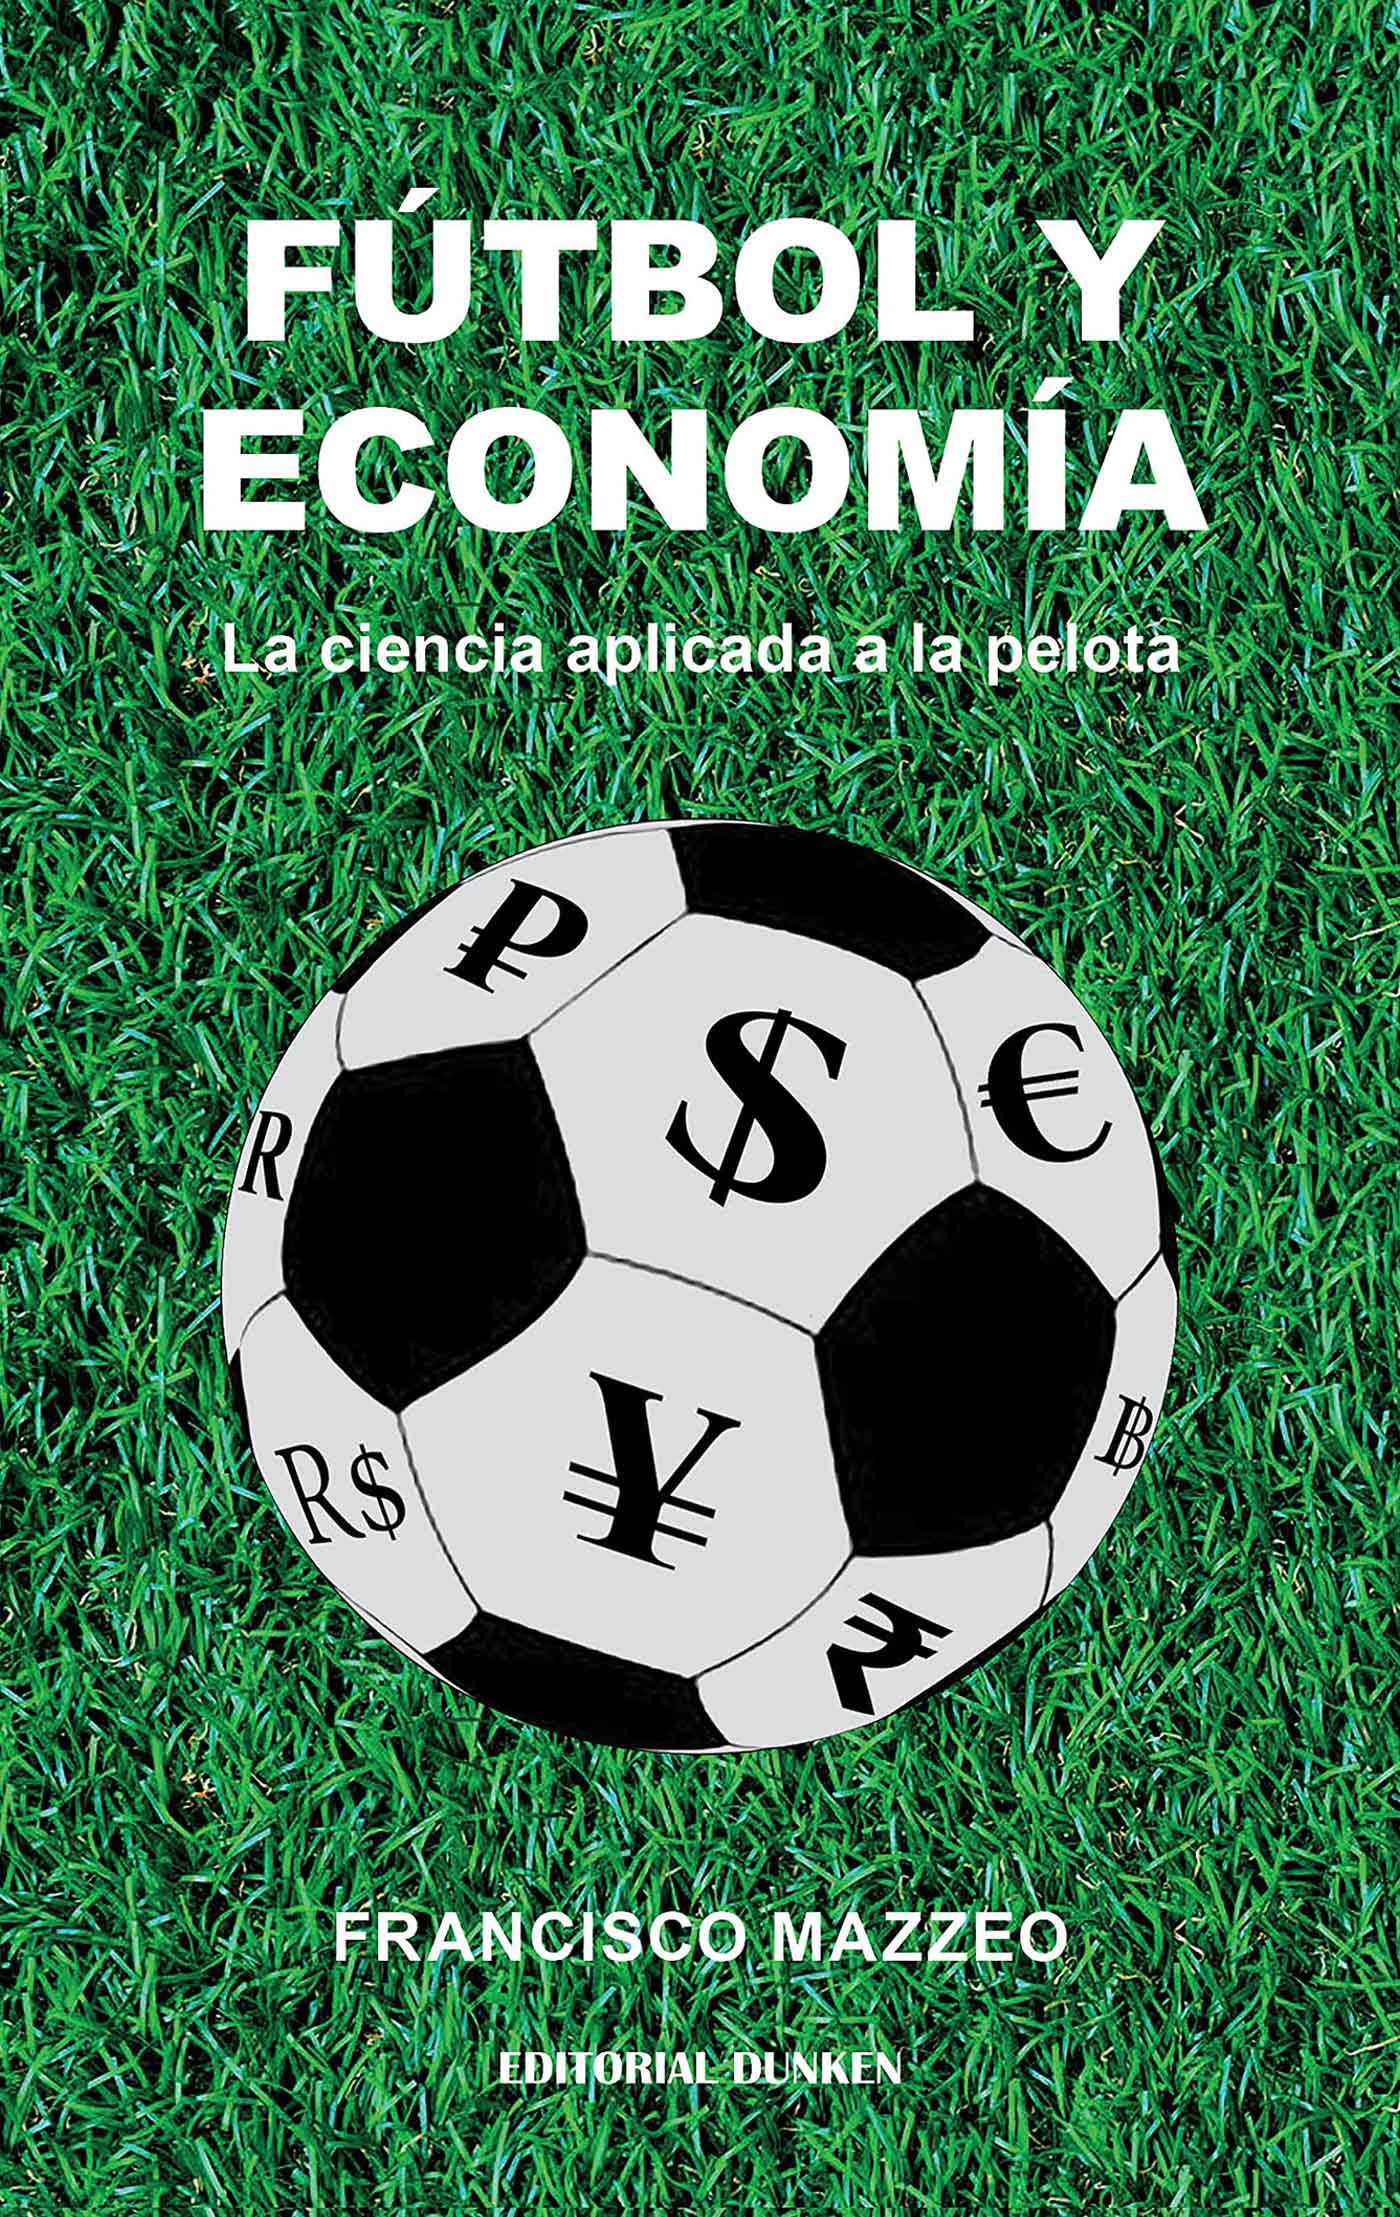 Fútbol y economía Francisco Mazzeo